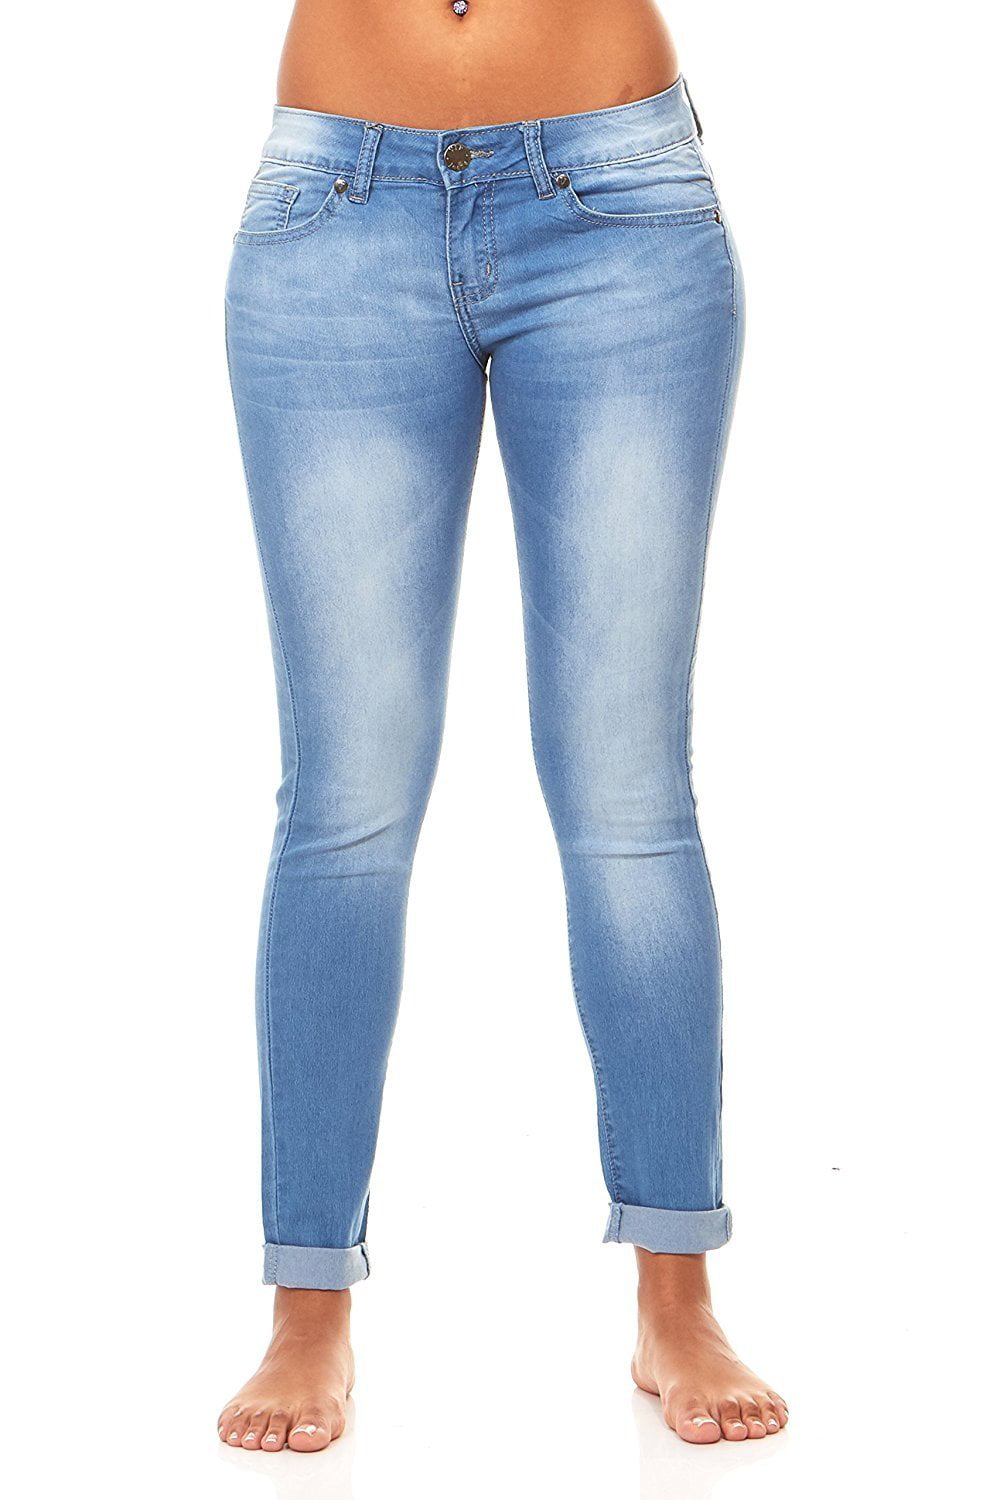 walmart blue jeans womens